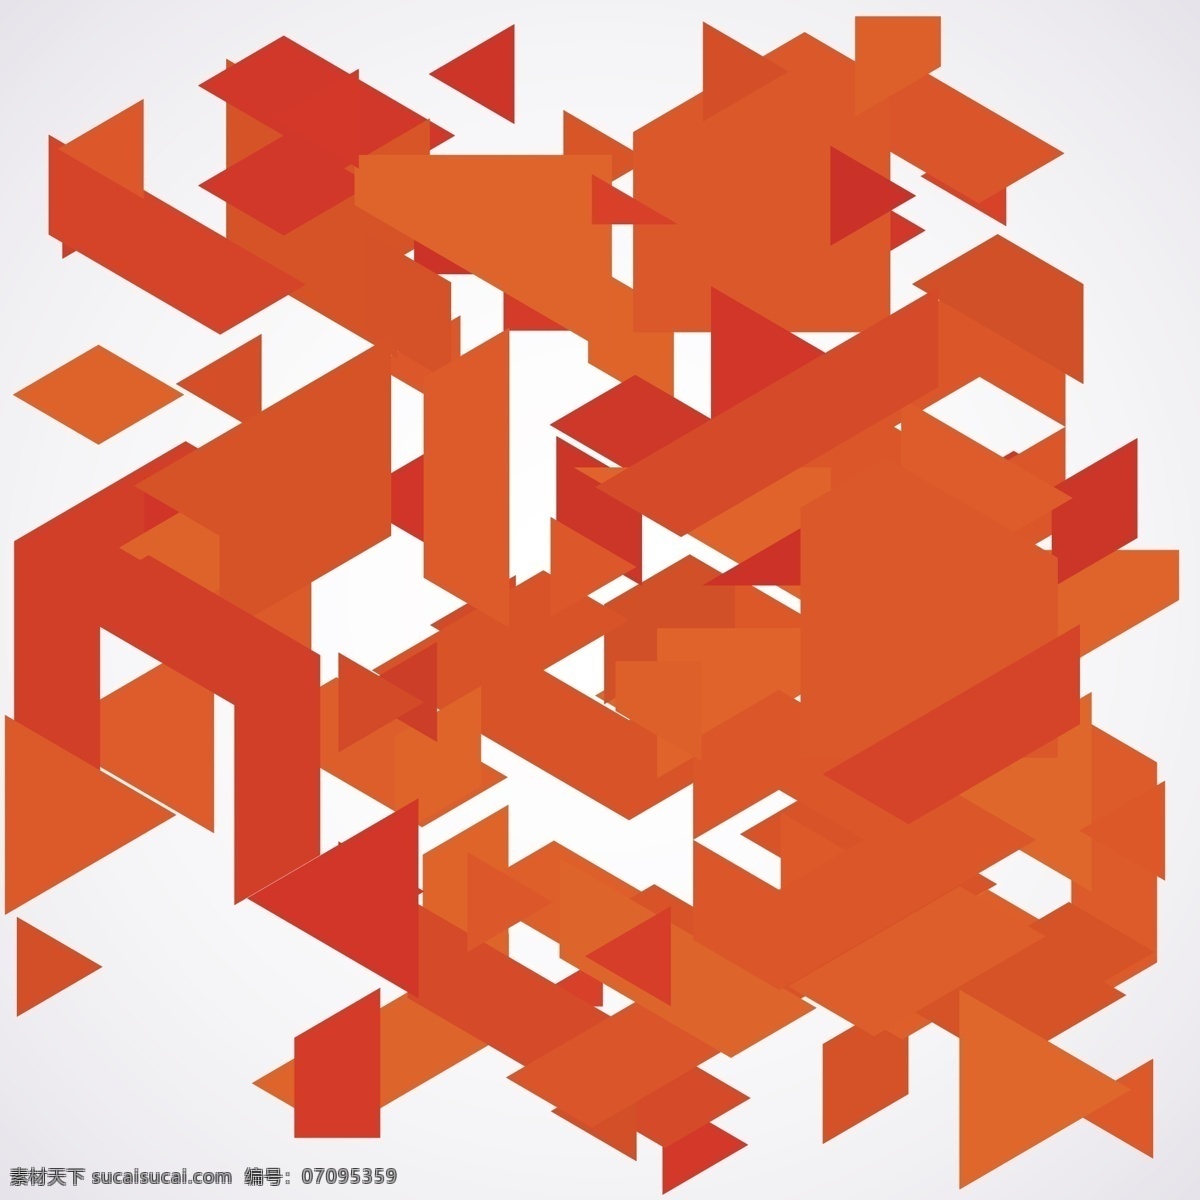 杂乱 橙色 多边形 背景 抽象的背景 抽象 几何 形状 壁纸 几何背景 现代 橙色背景 几何形态 现代背景 抽象的形状 随机 红色